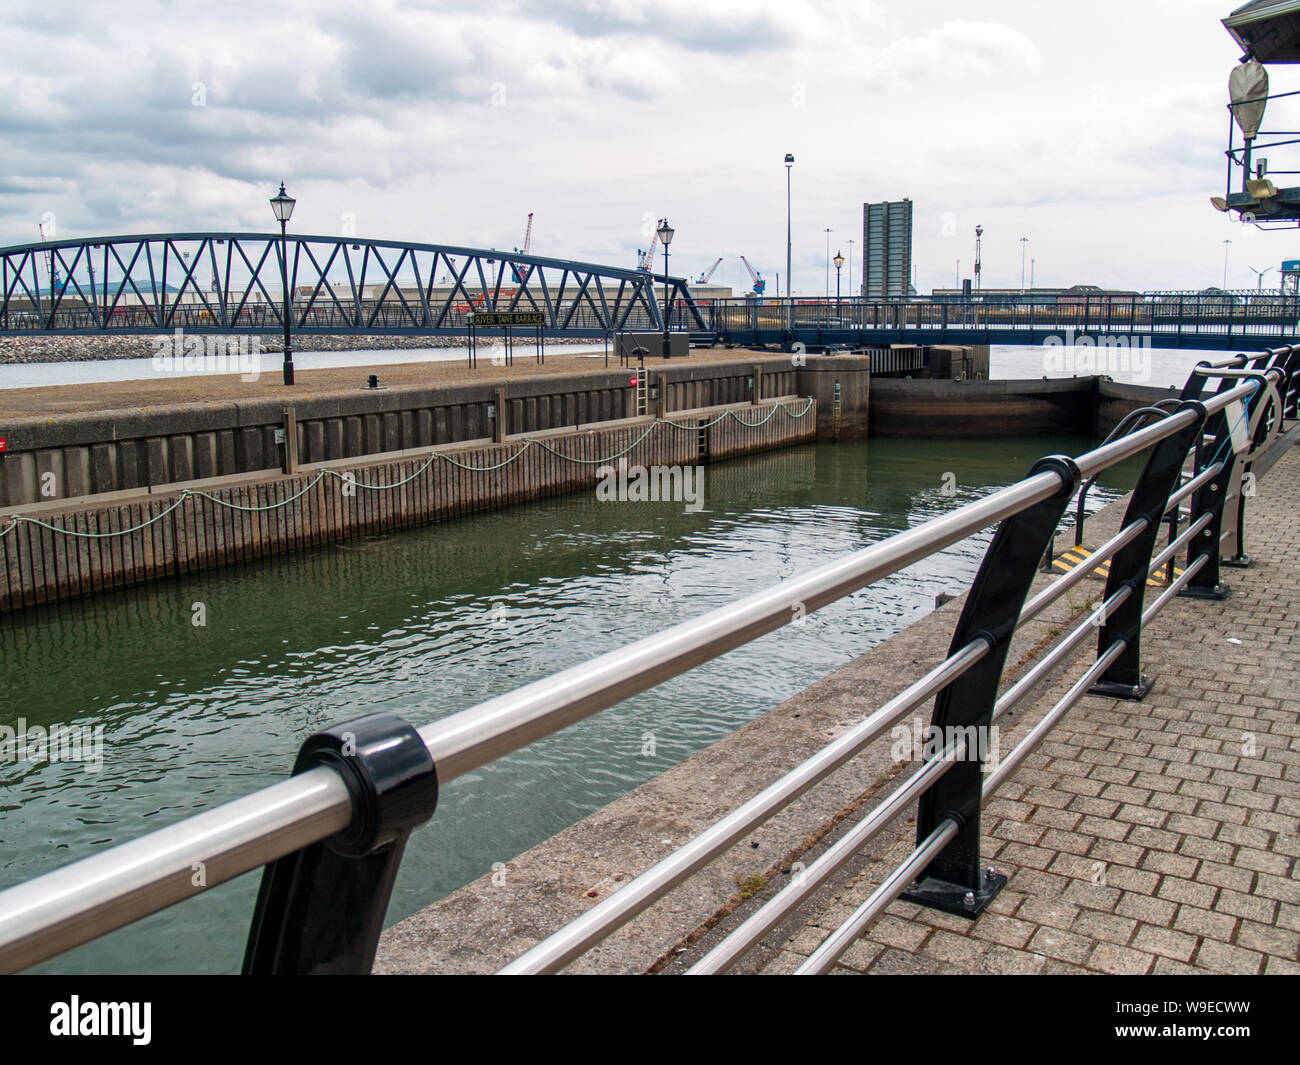 Barrage Tawe Lock à Swansea. Le verrou est pleine d'eau et le pont barrage Tawe peut être clairement vu. Port de plaisance de Swansea, Pays de Galles, Royaume-Uni. Banque D'Images